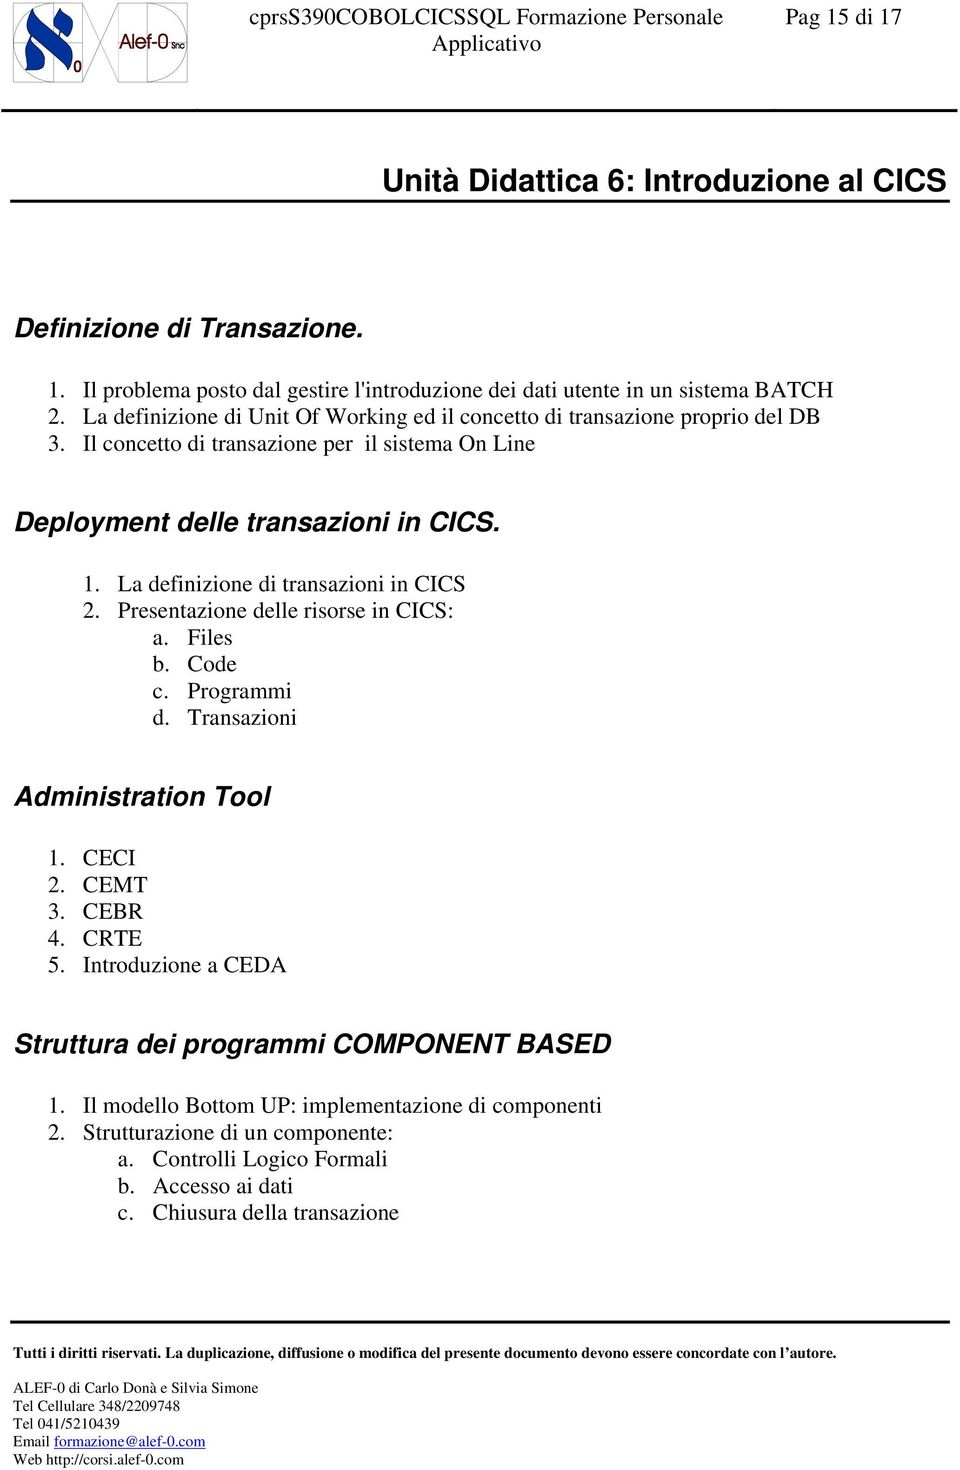 La definizione di transazioni in CICS 2. Presentazione delle risorse in CICS: a. Files b. Code c. Programmi d. Transazioni Administration Tool 1. CECI 2. CEMT 3. CEBR 4. CRTE 5.